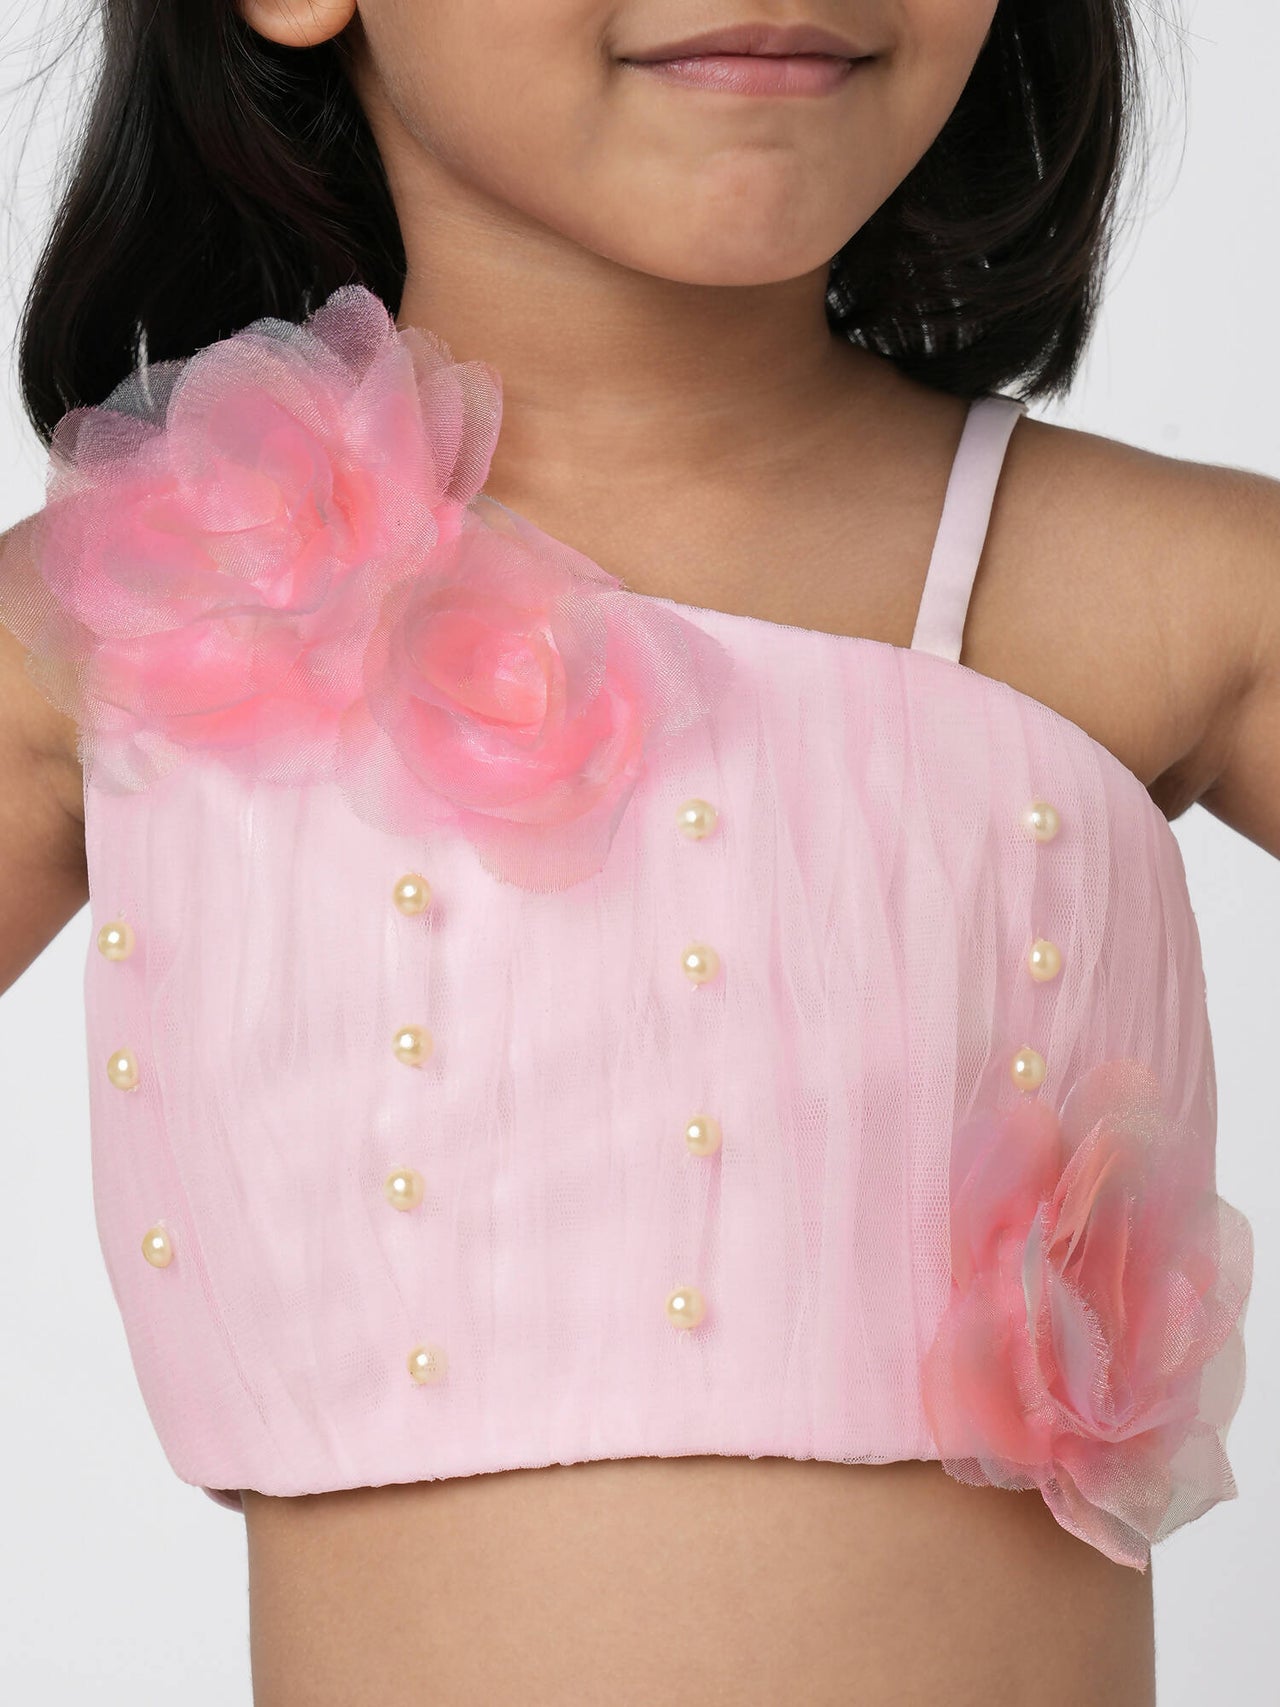 Lil Drama Paris Nights Girls Pink 3D Flower Embellished Lehanga Top - Distacart